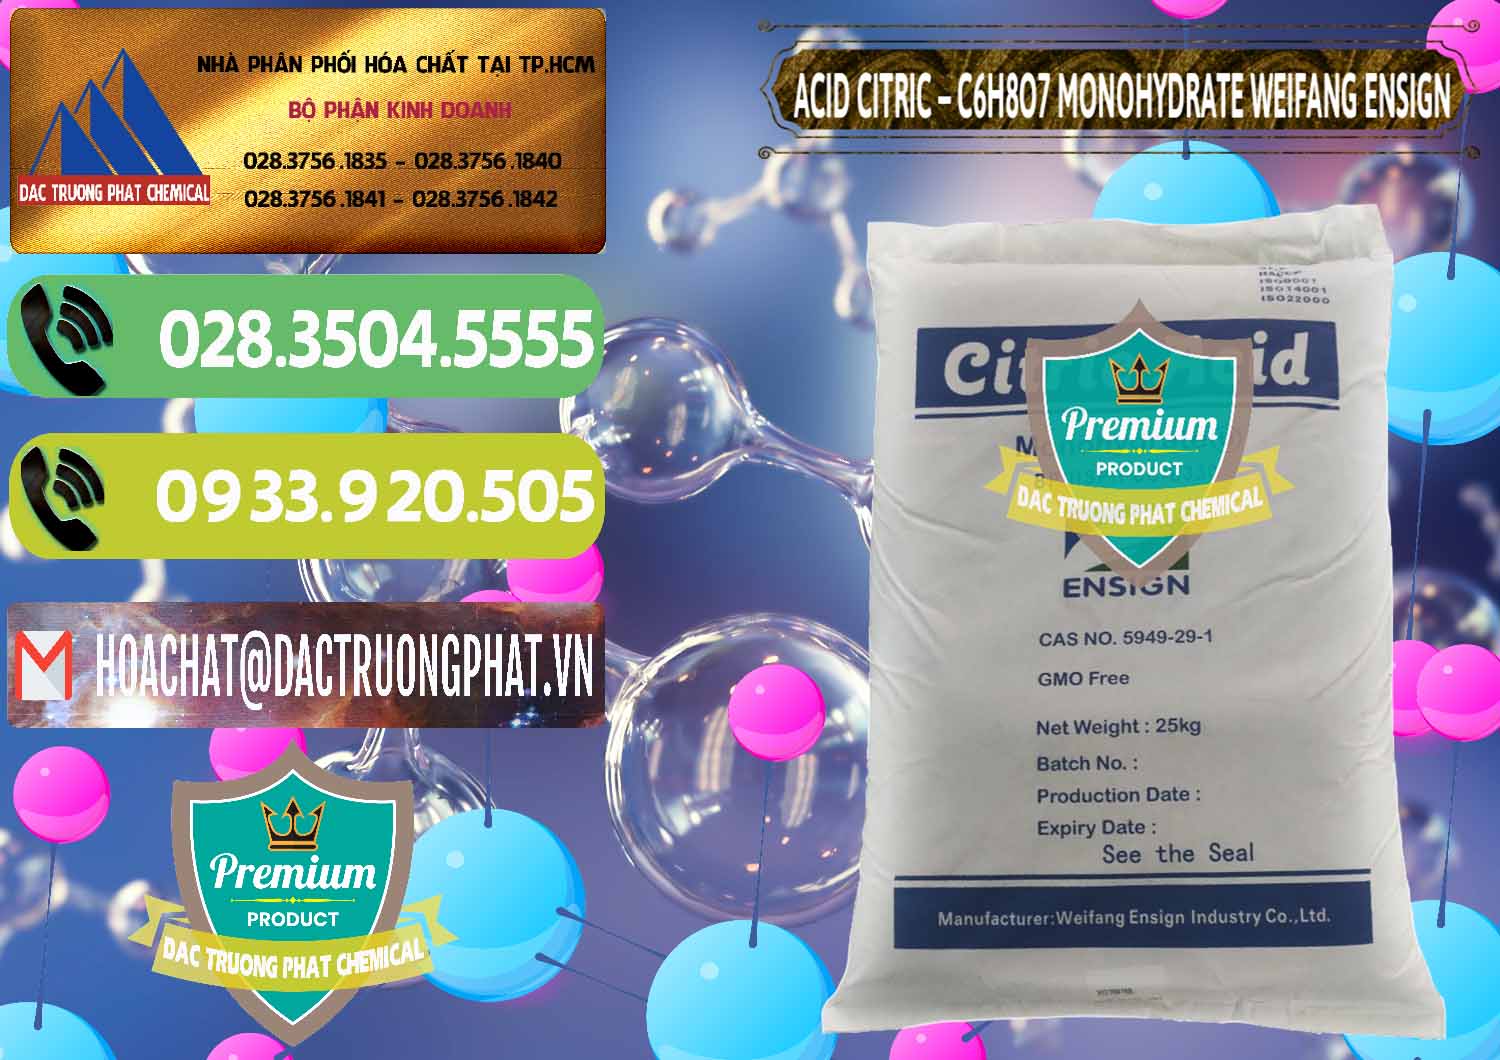 Chuyên bán và cung ứng Acid Citric - Axit Citric Monohydrate Weifang Trung Quốc China - 0009 - Cty chuyên cung cấp - bán hóa chất tại TP.HCM - hoachatmientay.vn